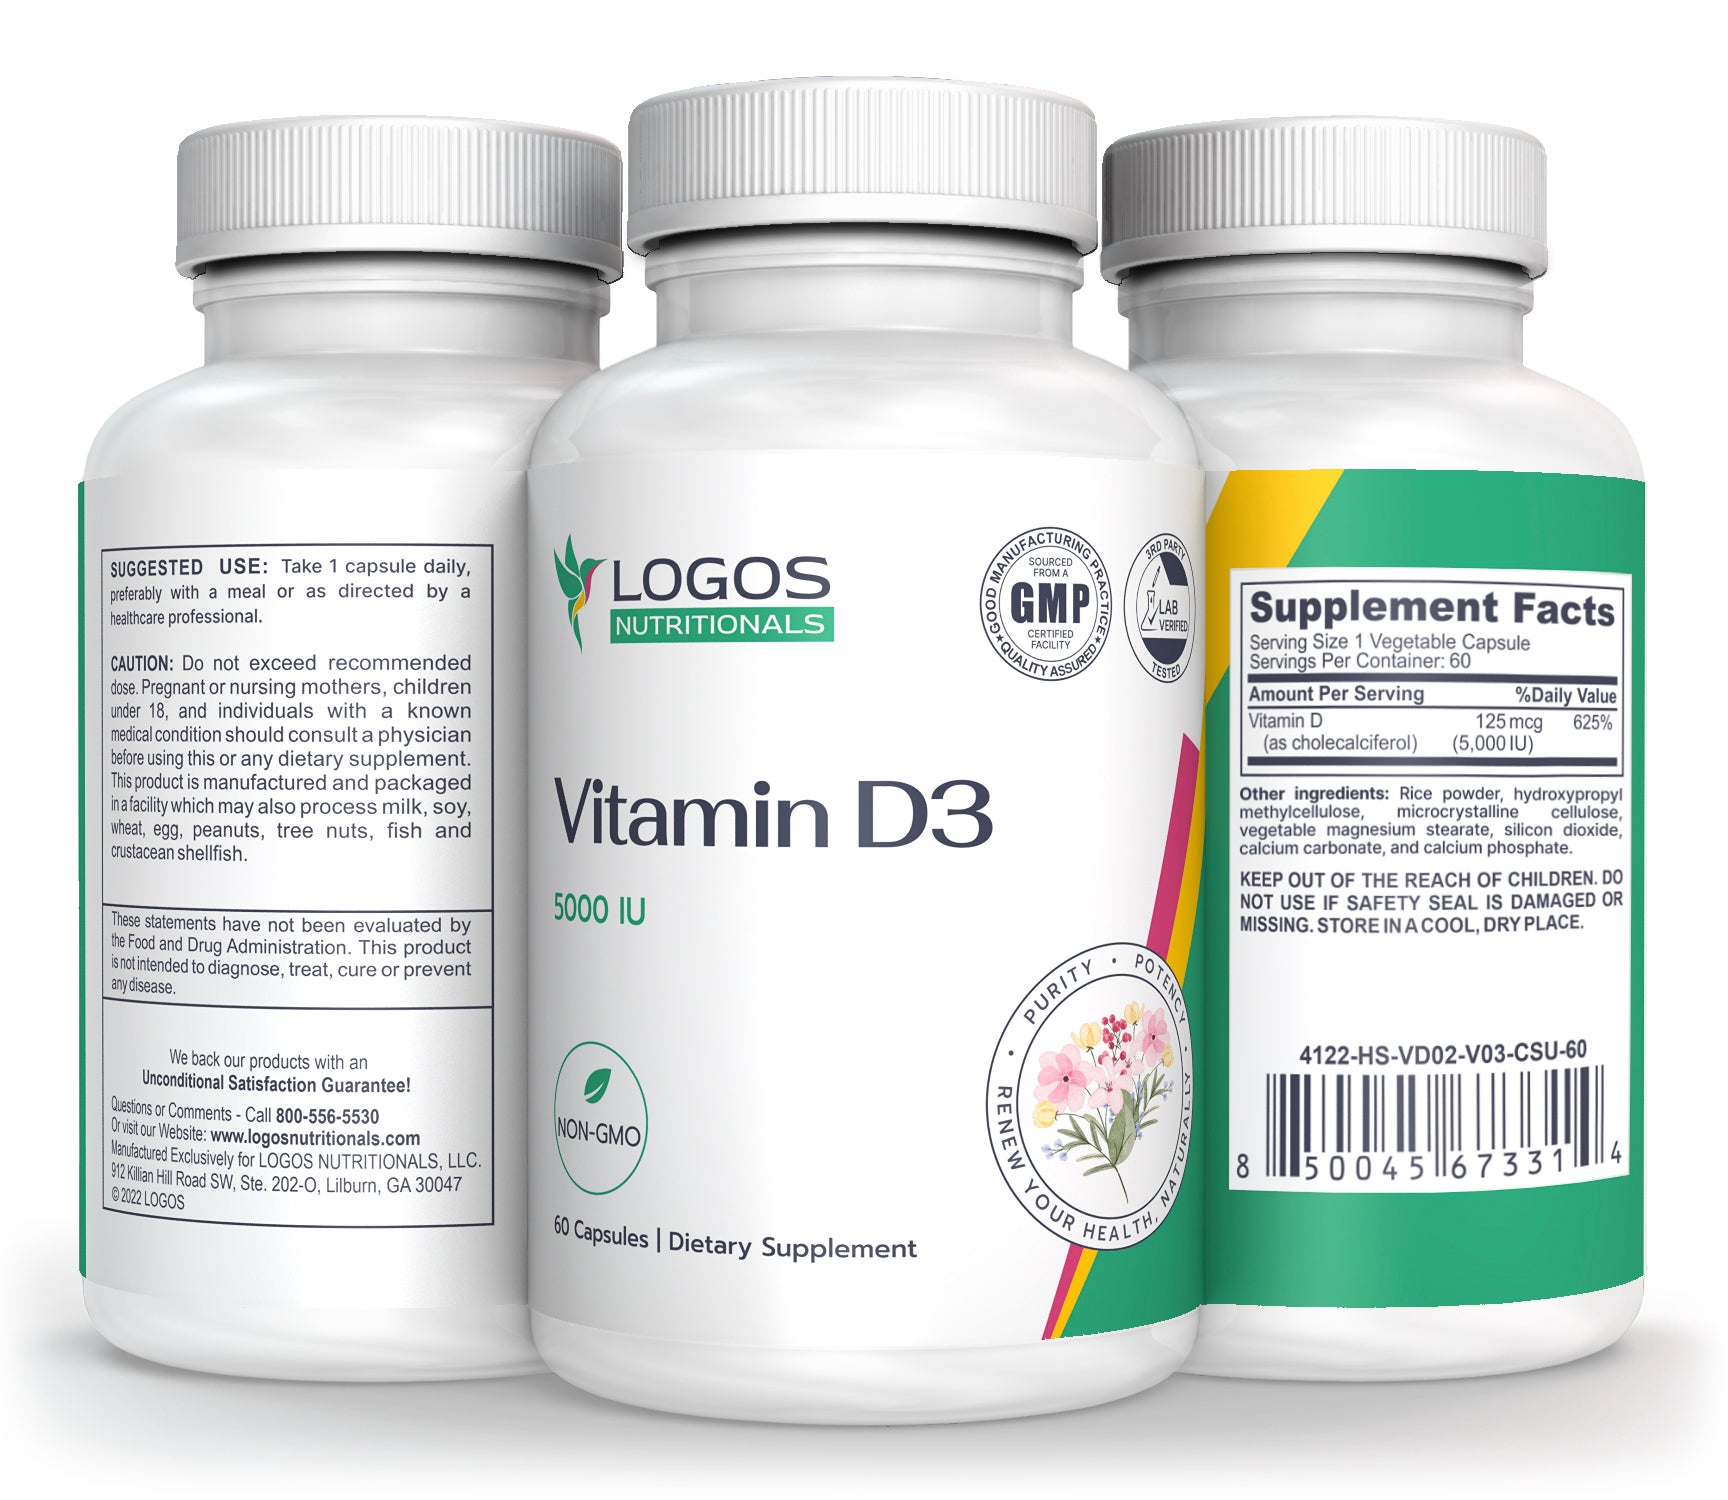 Logos Nutritionals_VITAMIN D